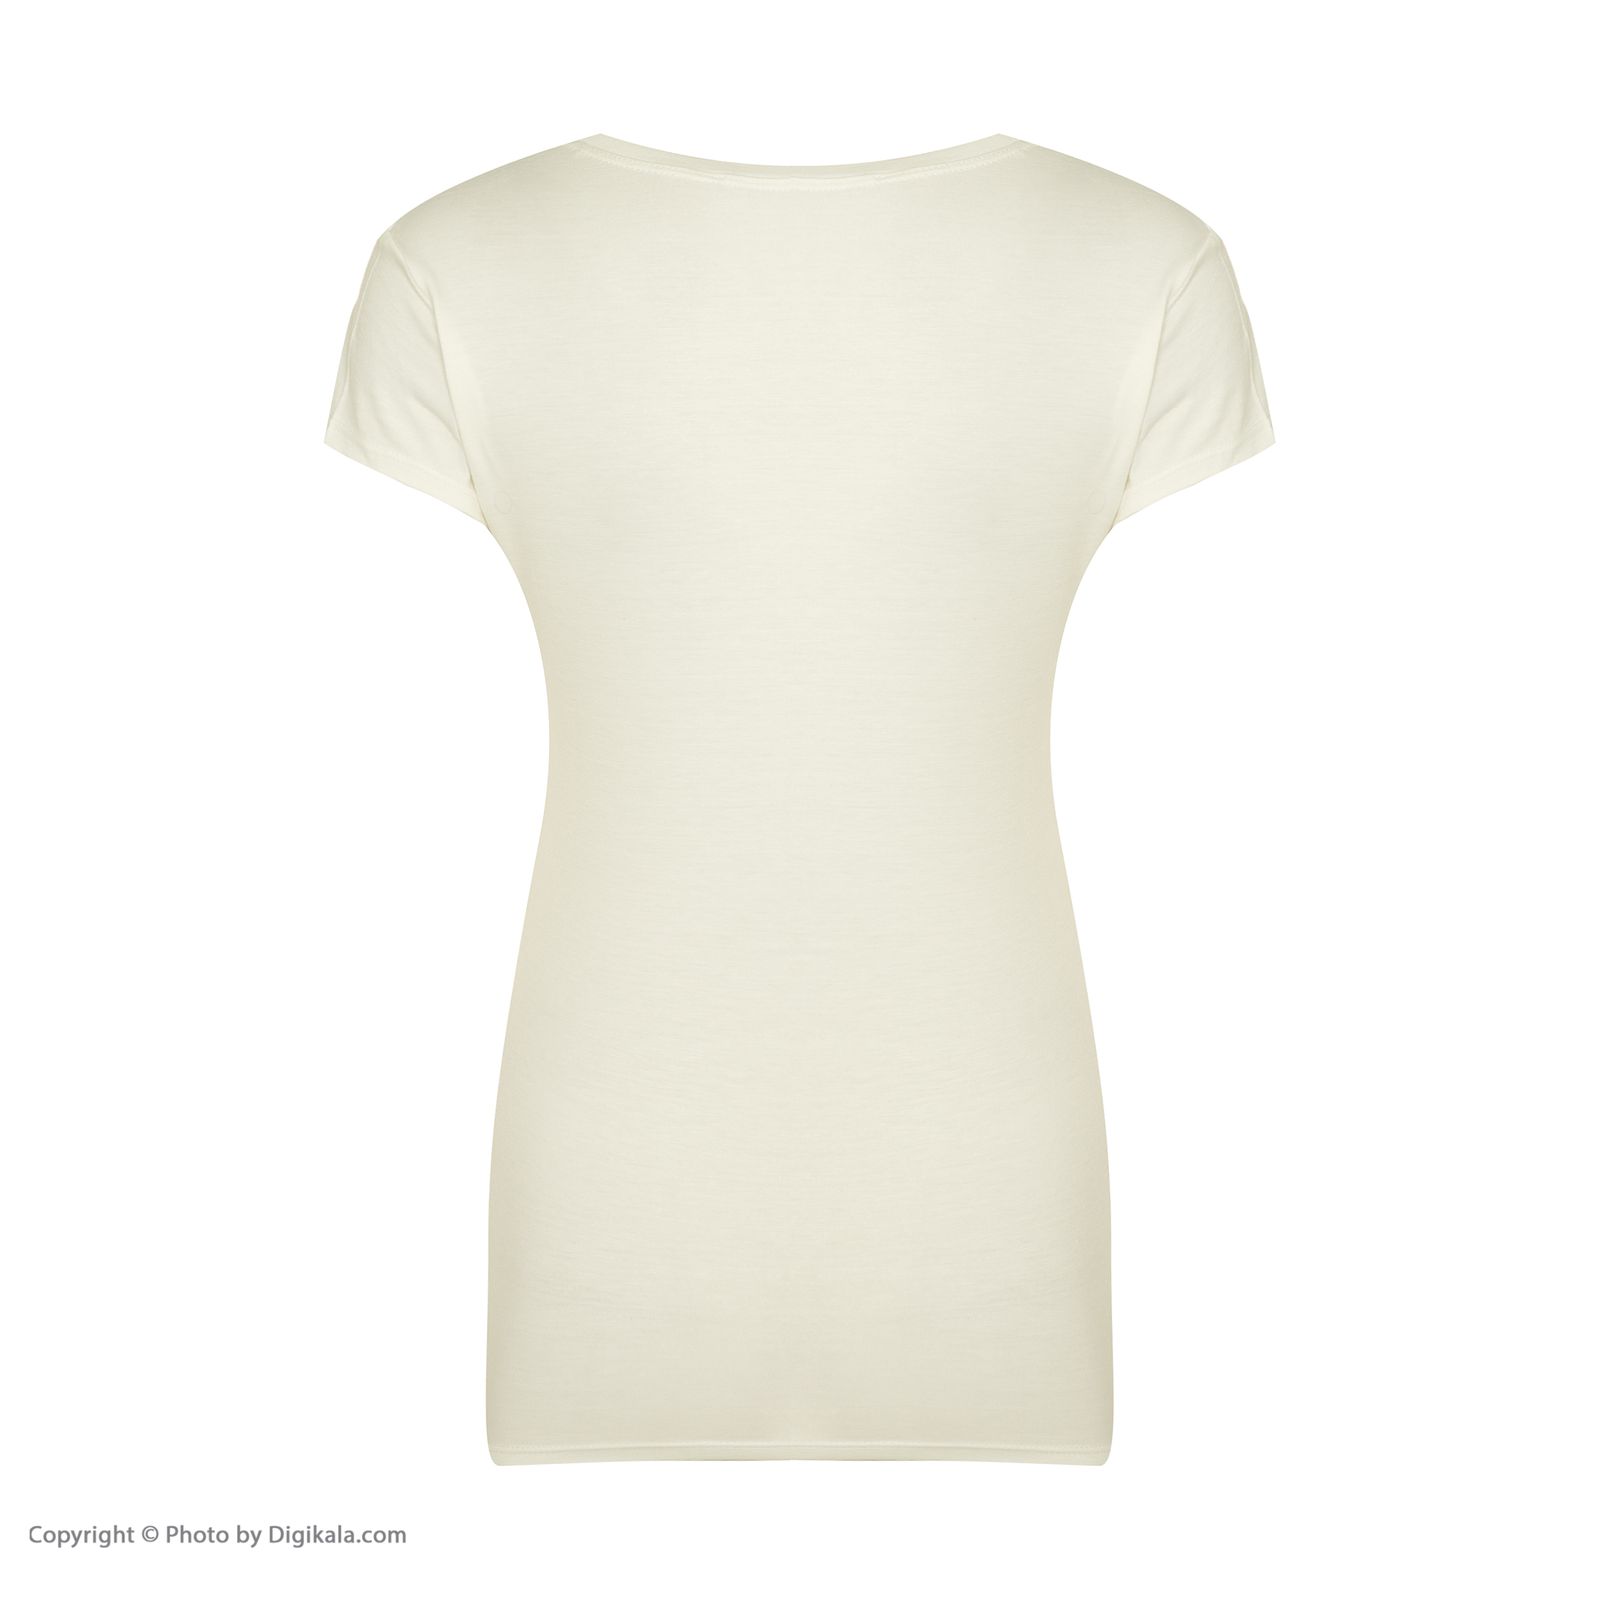 ست تی شرت و شلوارک زنانه افراتین مدل Dream کد 6558 رنگ شیری -  - 8